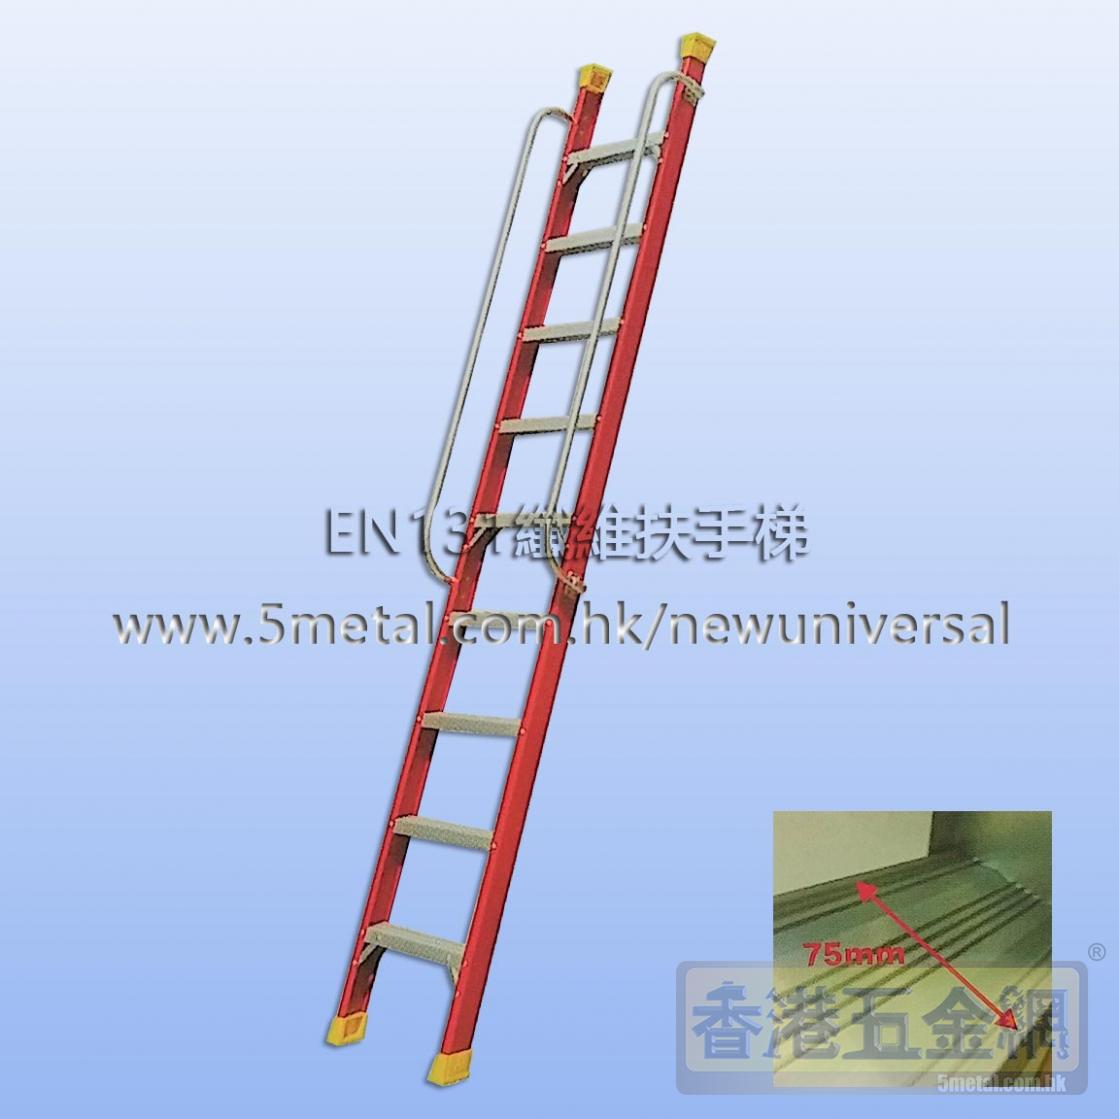 訂做/製/造MAPLE楓葉牌 EN131證書纖維扶手直梯